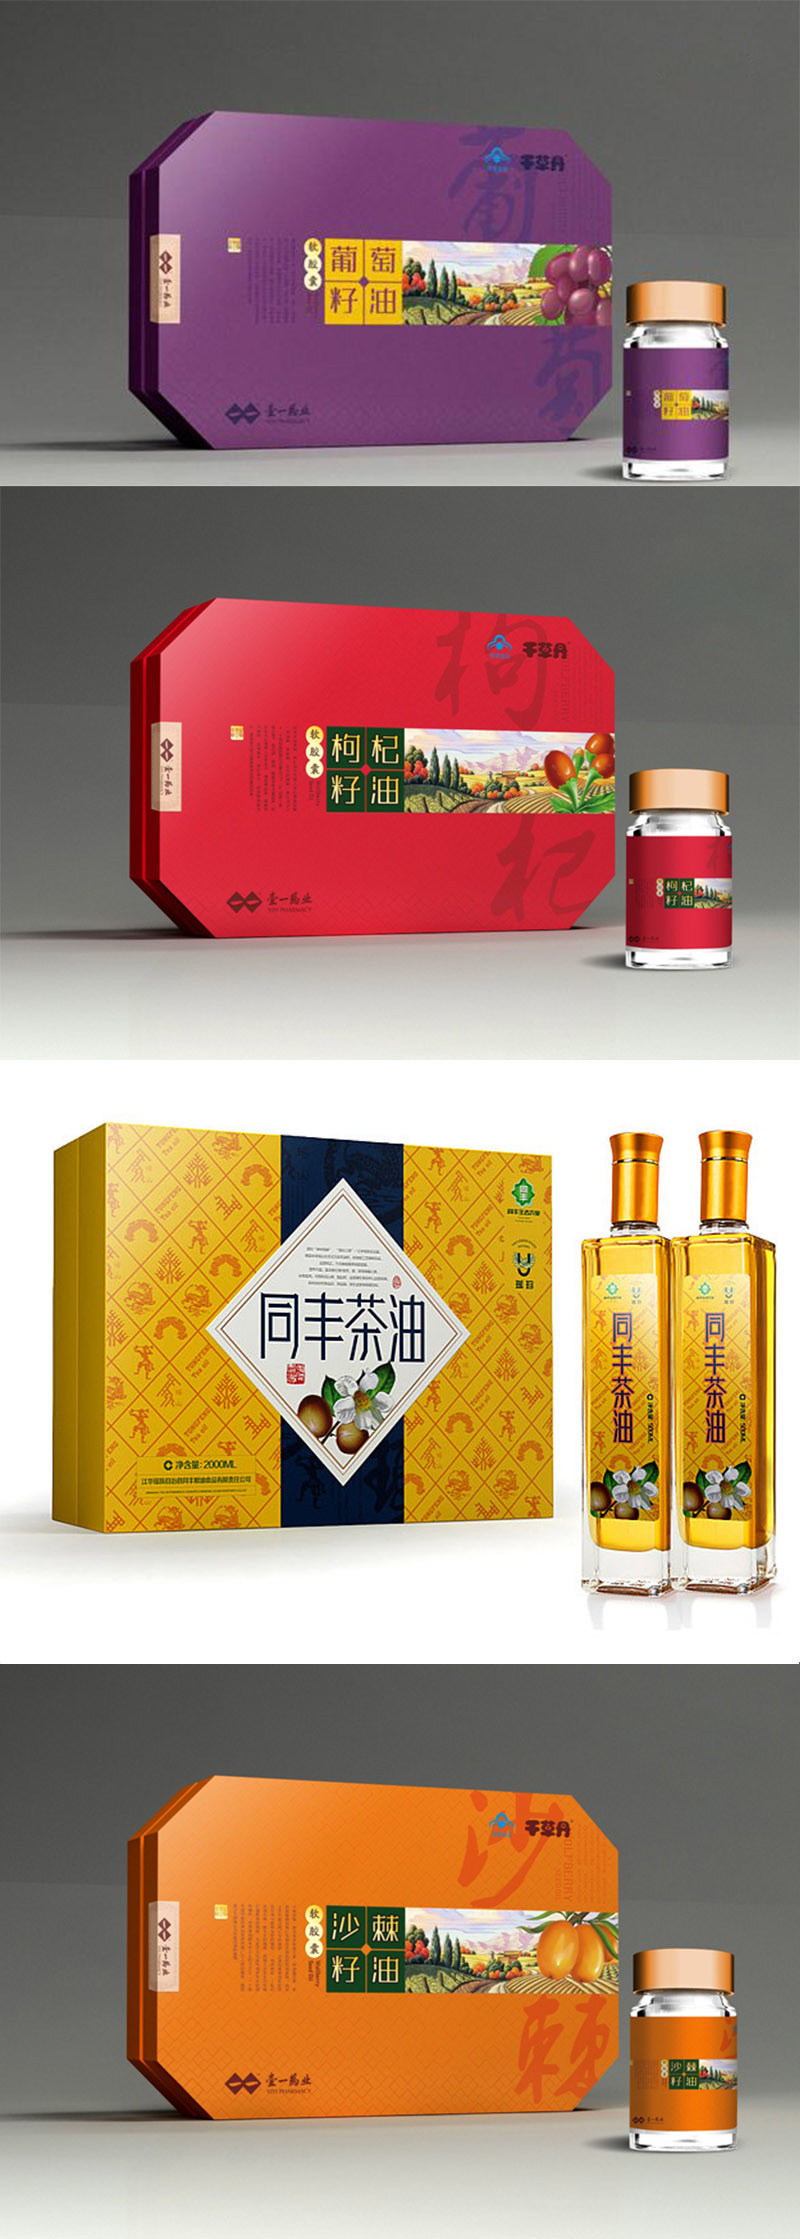 同丰茶油系列包装设计与制作